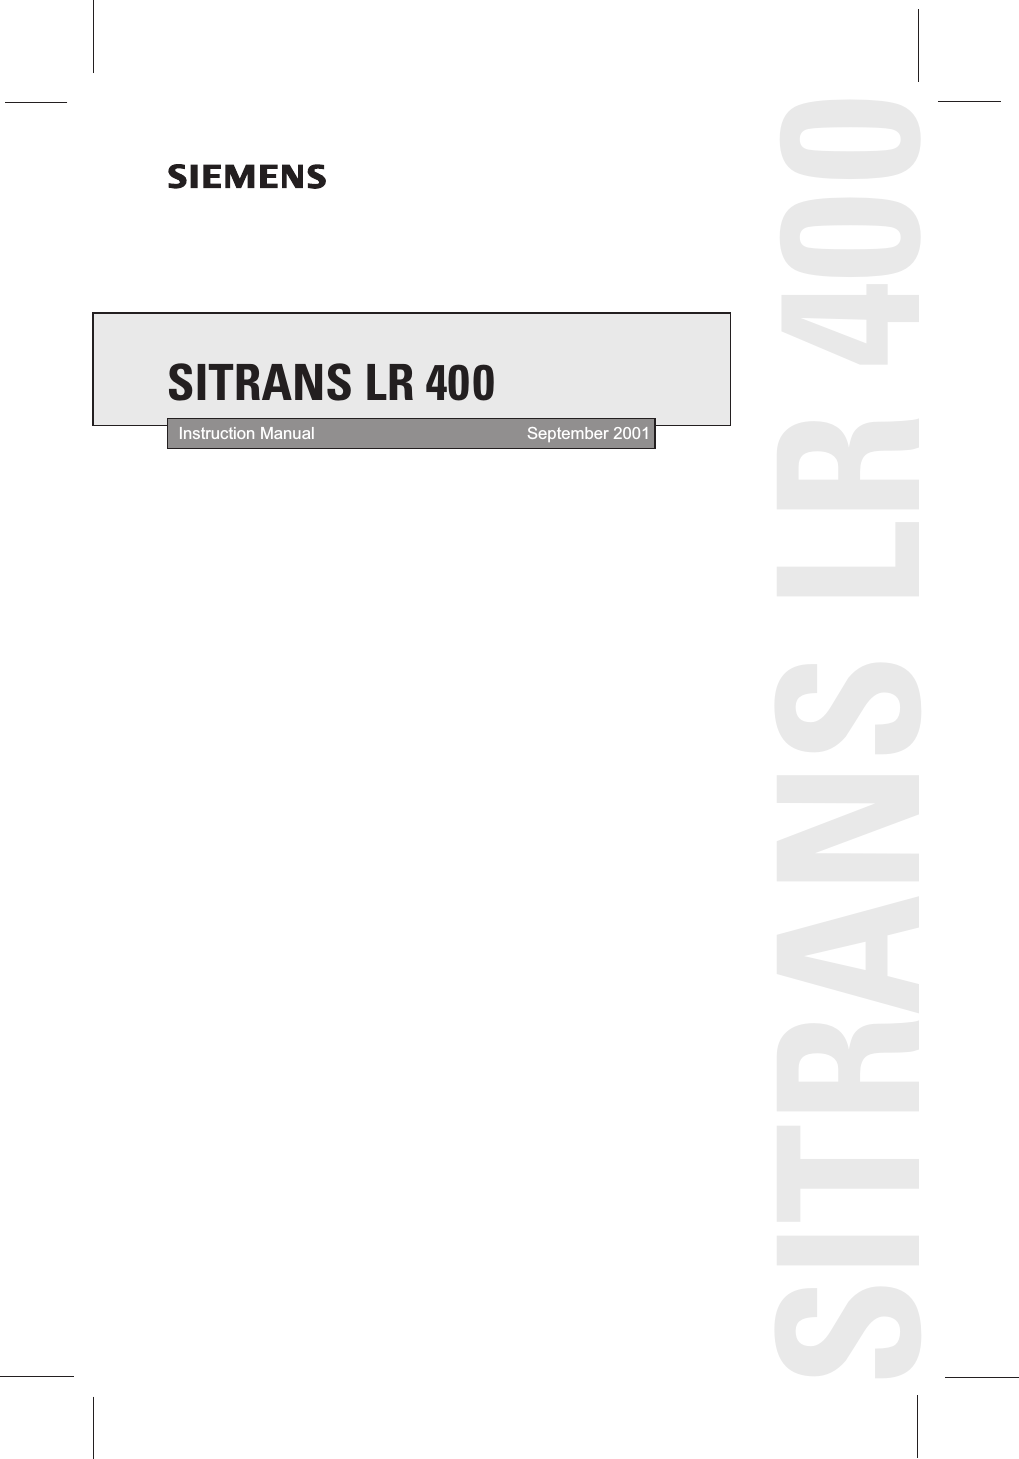 Instruction Manual September 2001SITRANS LR 400SITRANS LR 400